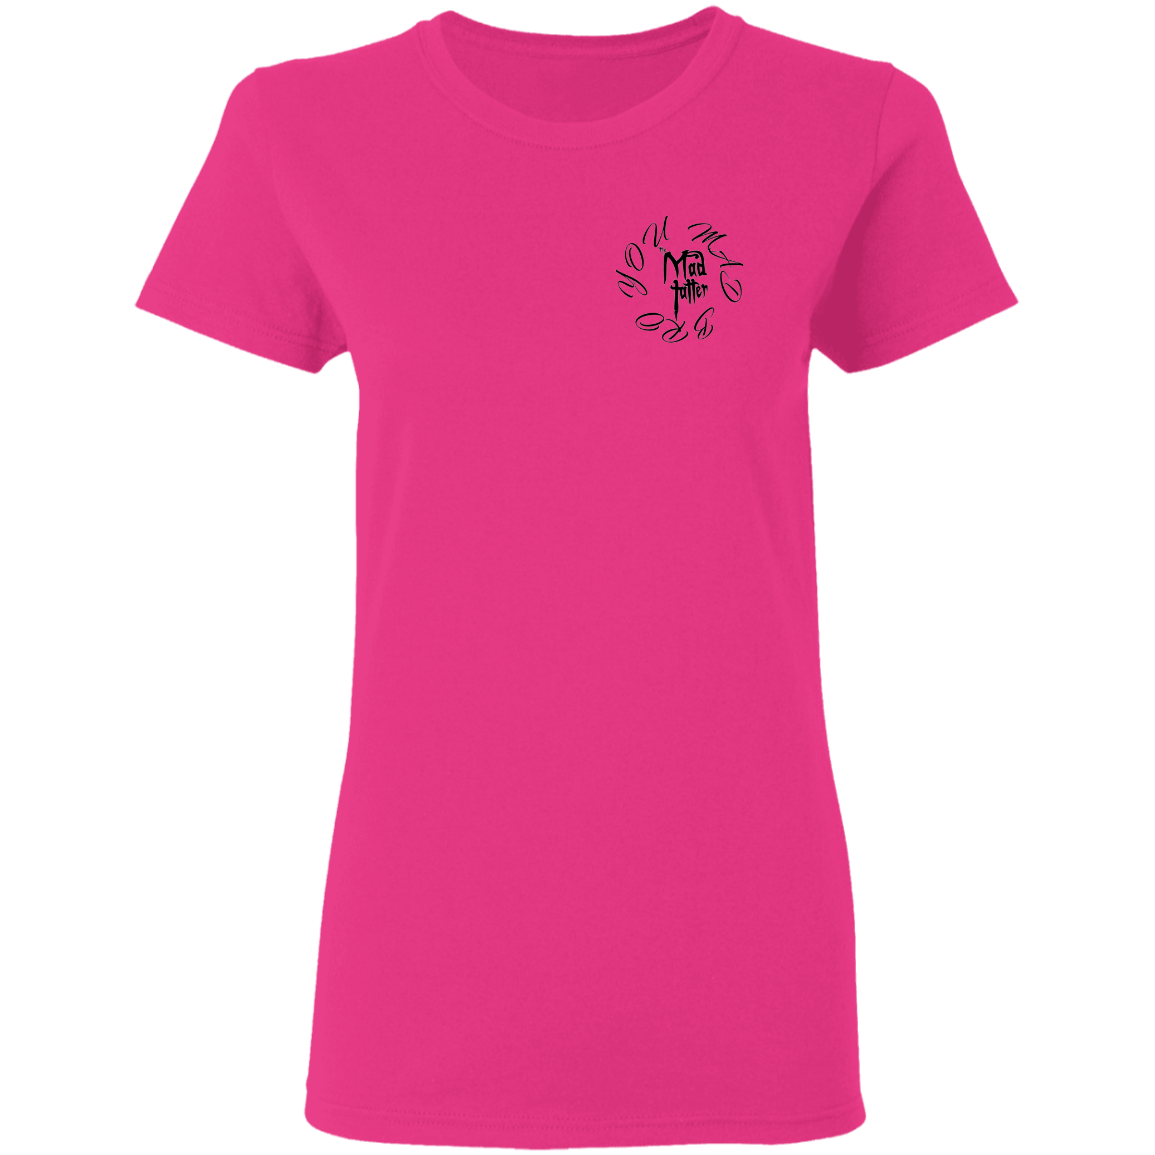 Ladies' Penta-Ram T-Shirt - Black Logo